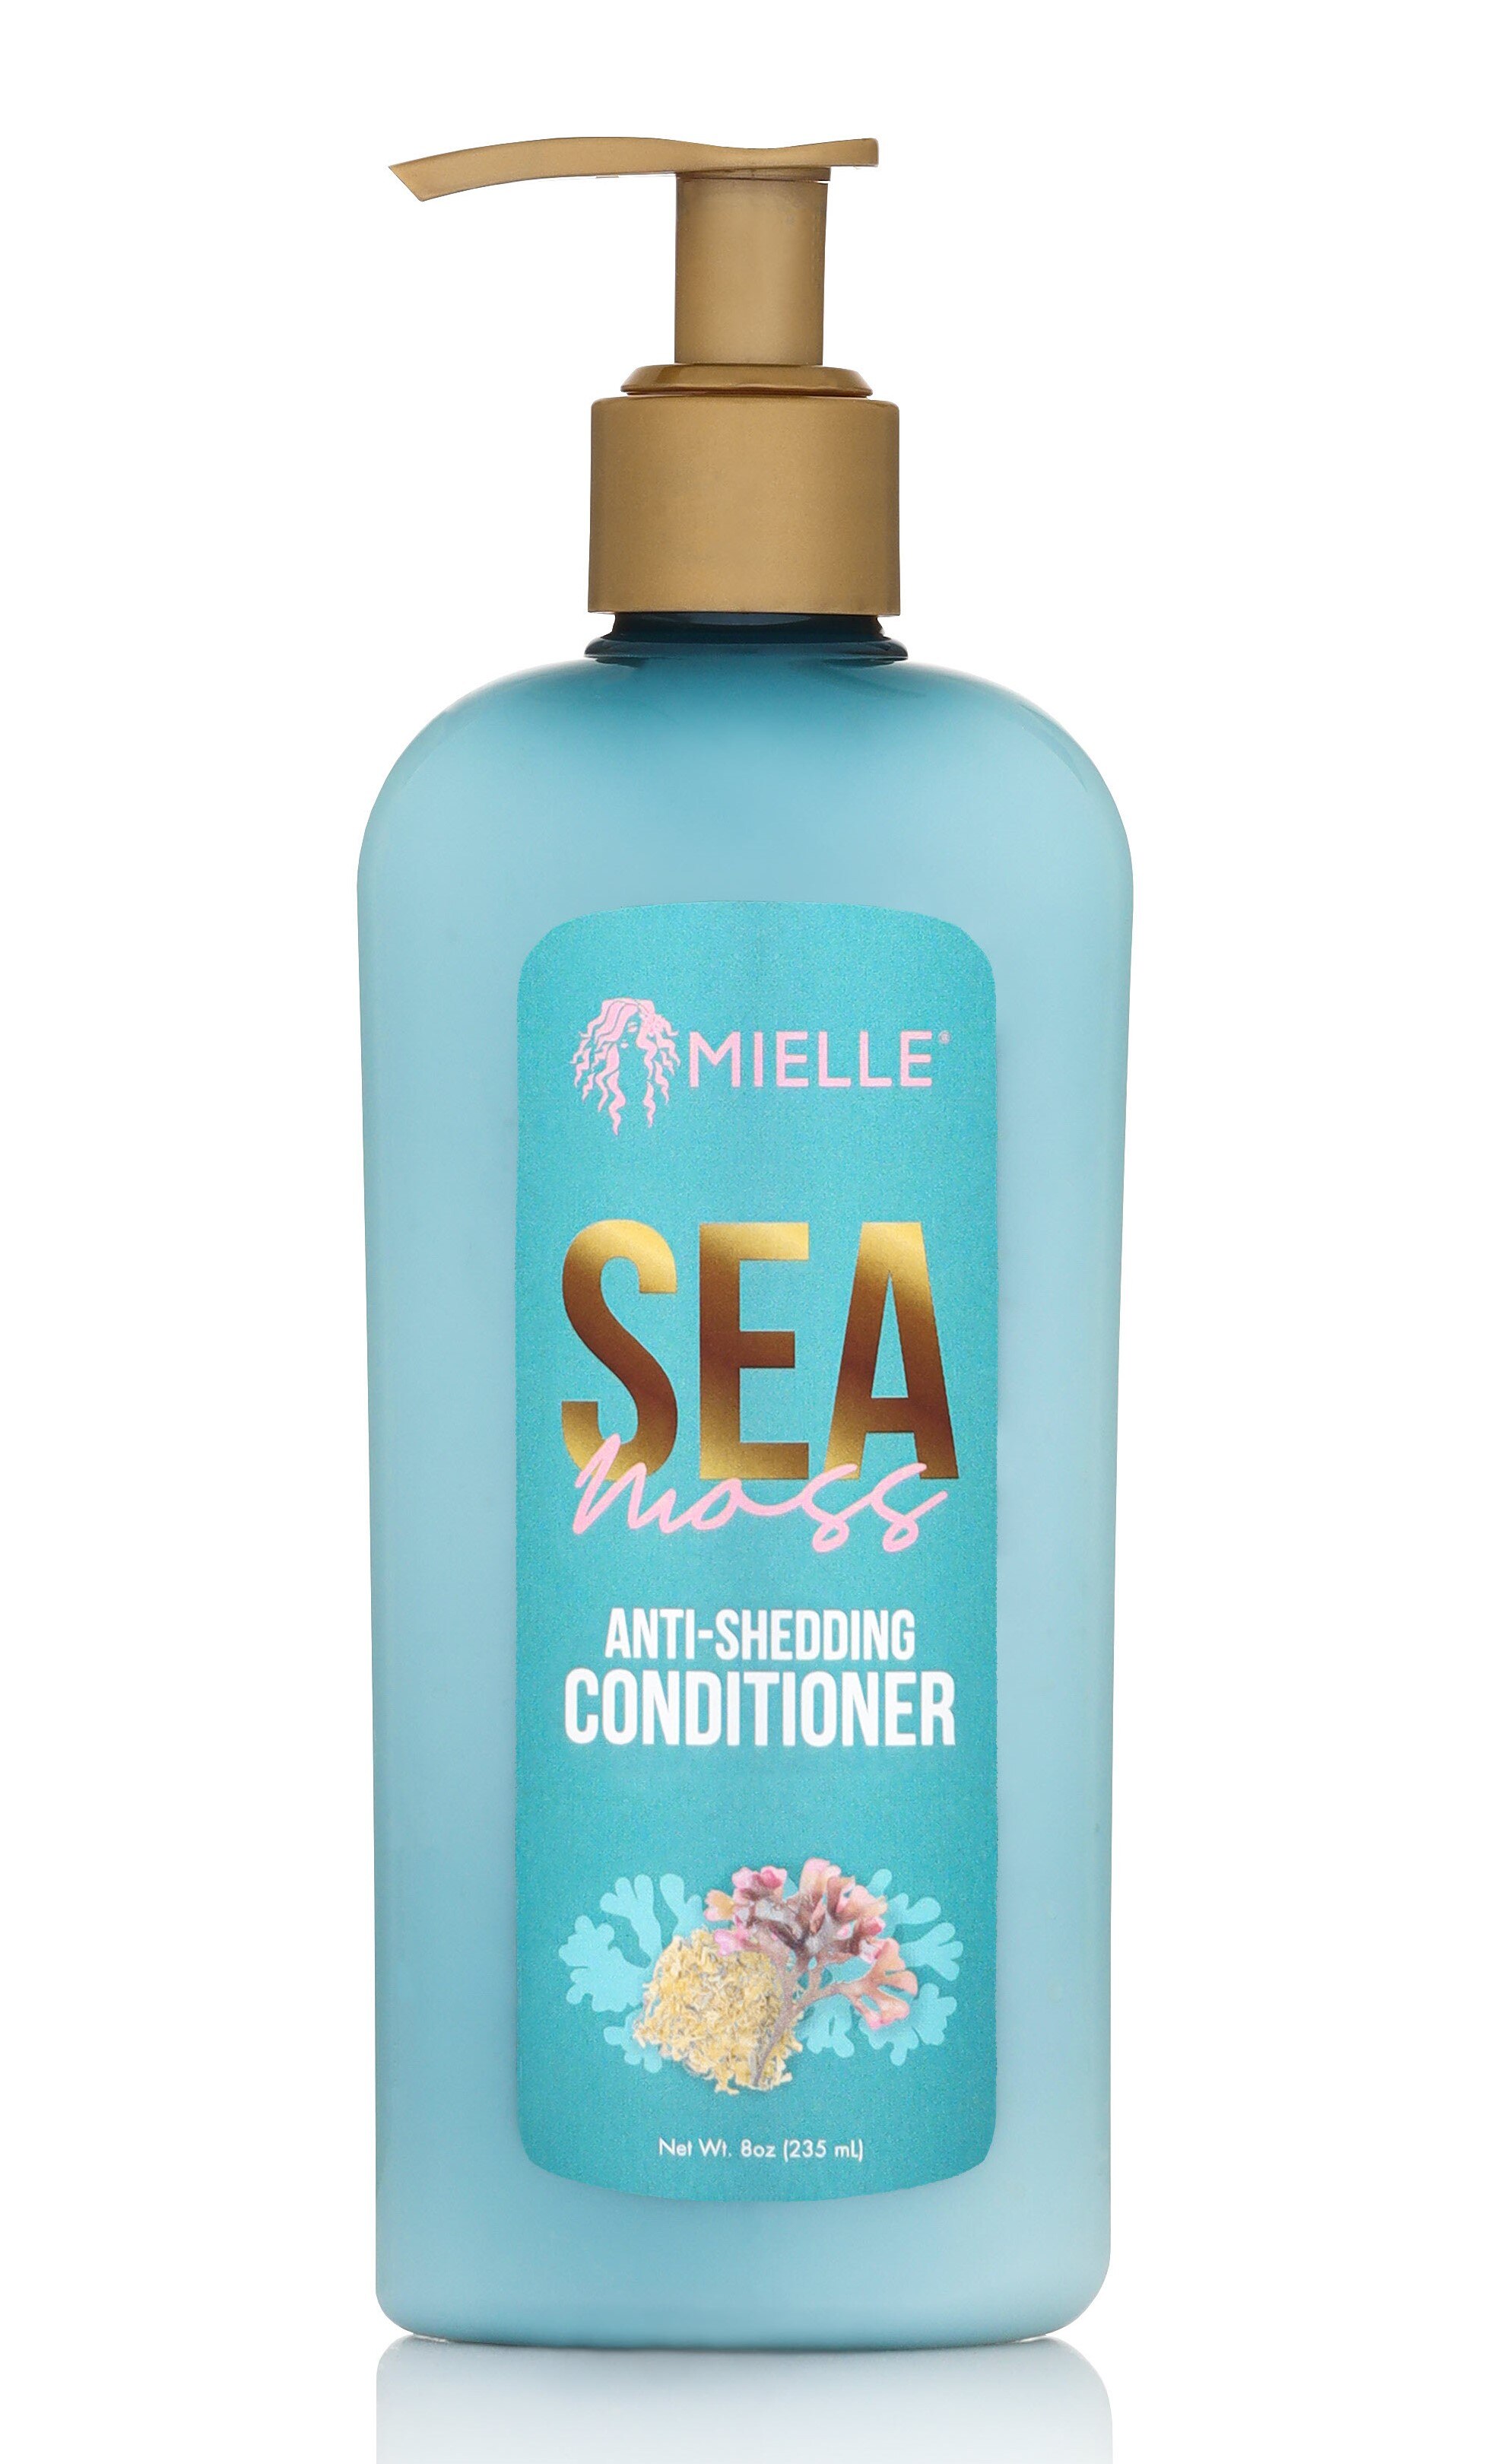 Mielle Sea Moss Anti Shedding Conditioner, 8 OZ